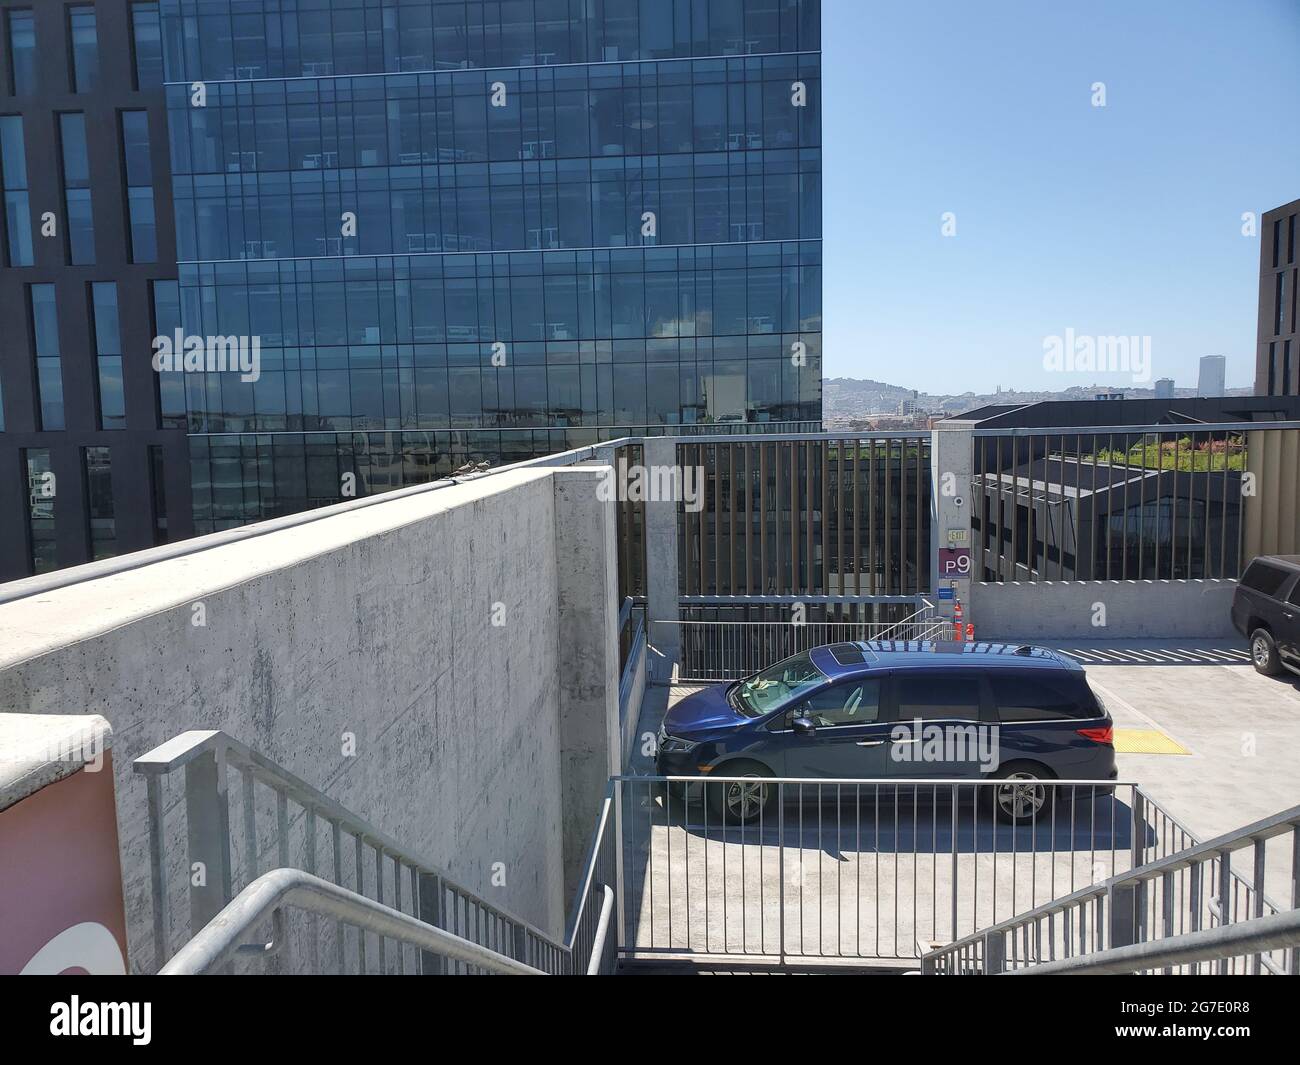 Le véhicule est visible, stationné au-dessus d'un grand garage de stationnement dans le quartier de Mission Bay à San Francisco, Californie, le 21 mai 2021. () Banque D'Images